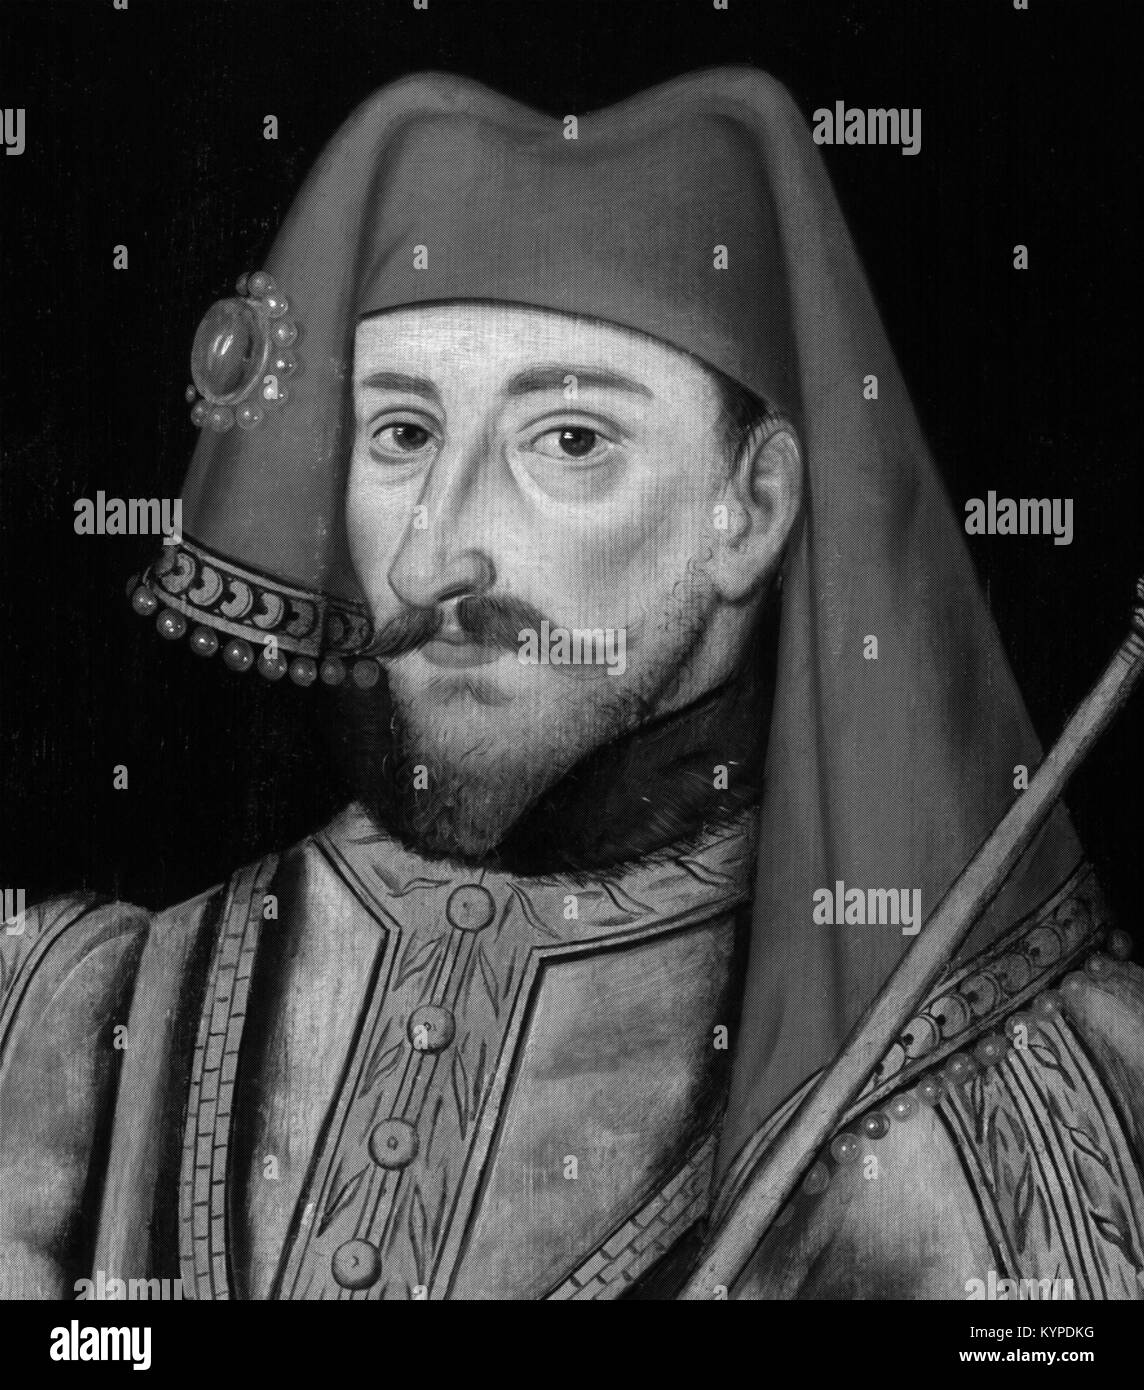 El rey Enrique IV de Inglaterra (1367-1413), que reinó de 1399 a 1413 Foto de stock